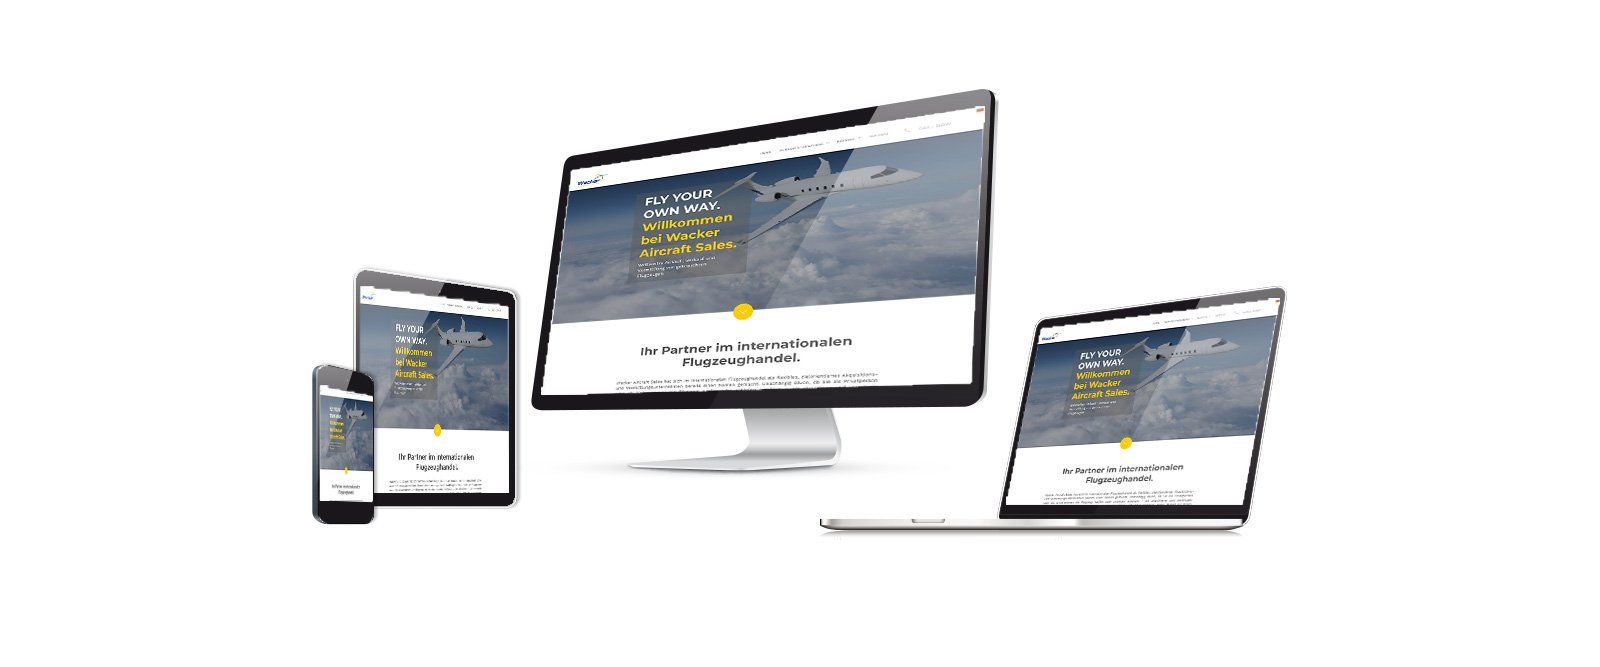 ABC creativ service, Andrea Bürgin, Web-Design, Wacker Aircraft Sales - An- und Verkauf von gebrauchten Flugzeugen,